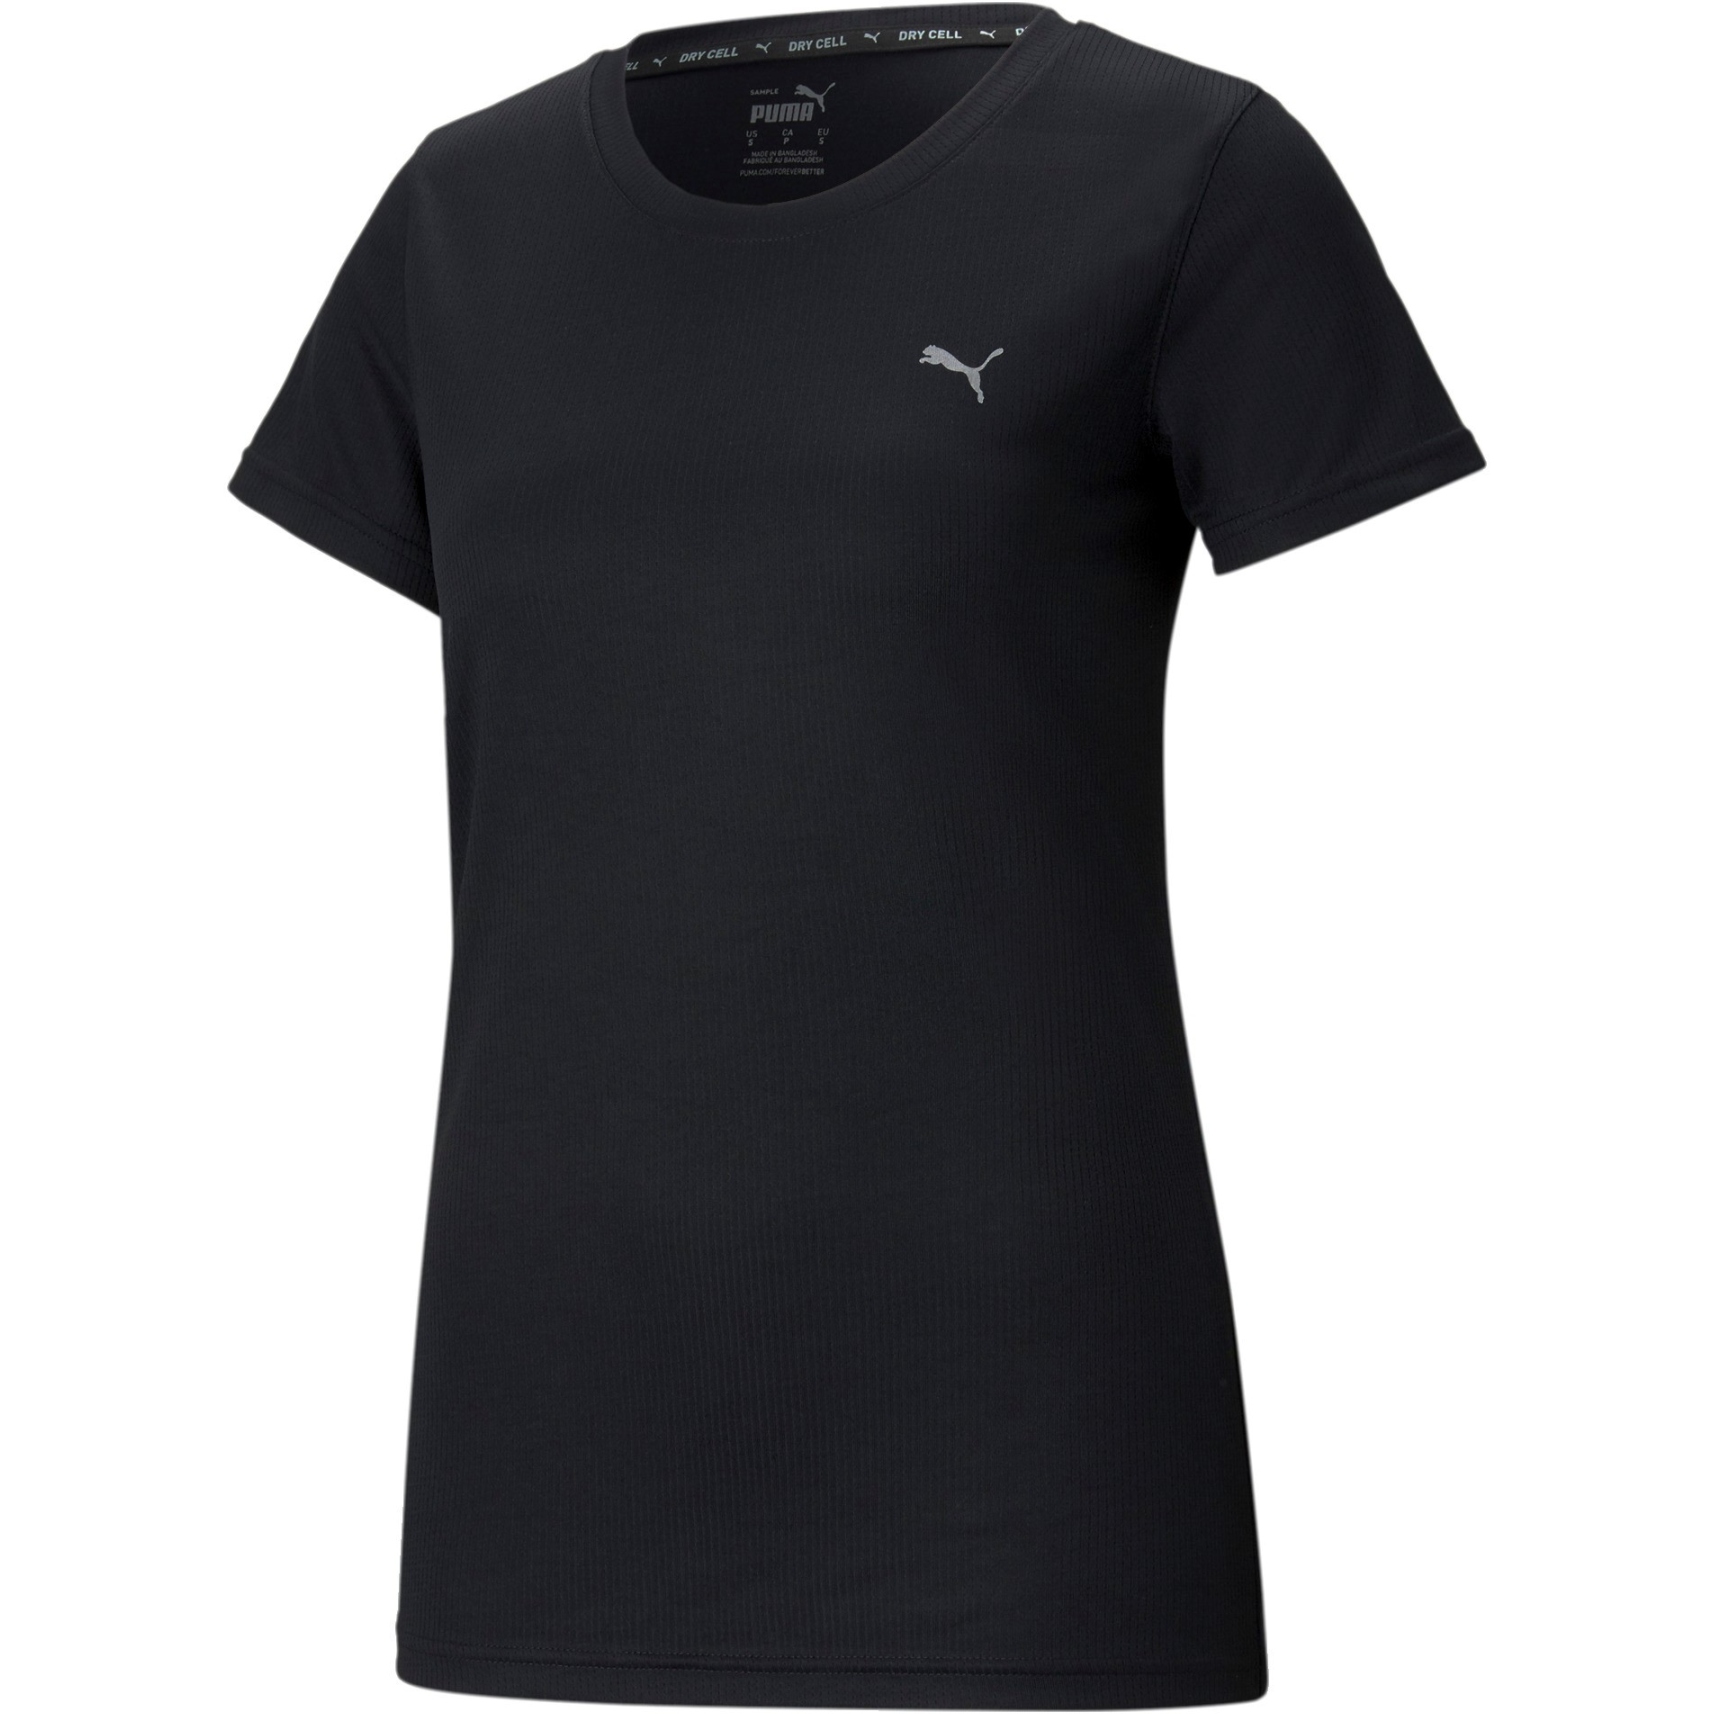 Produktbild von Puma Performance Trainings-T-Shirt Damen - Puma Schwarz